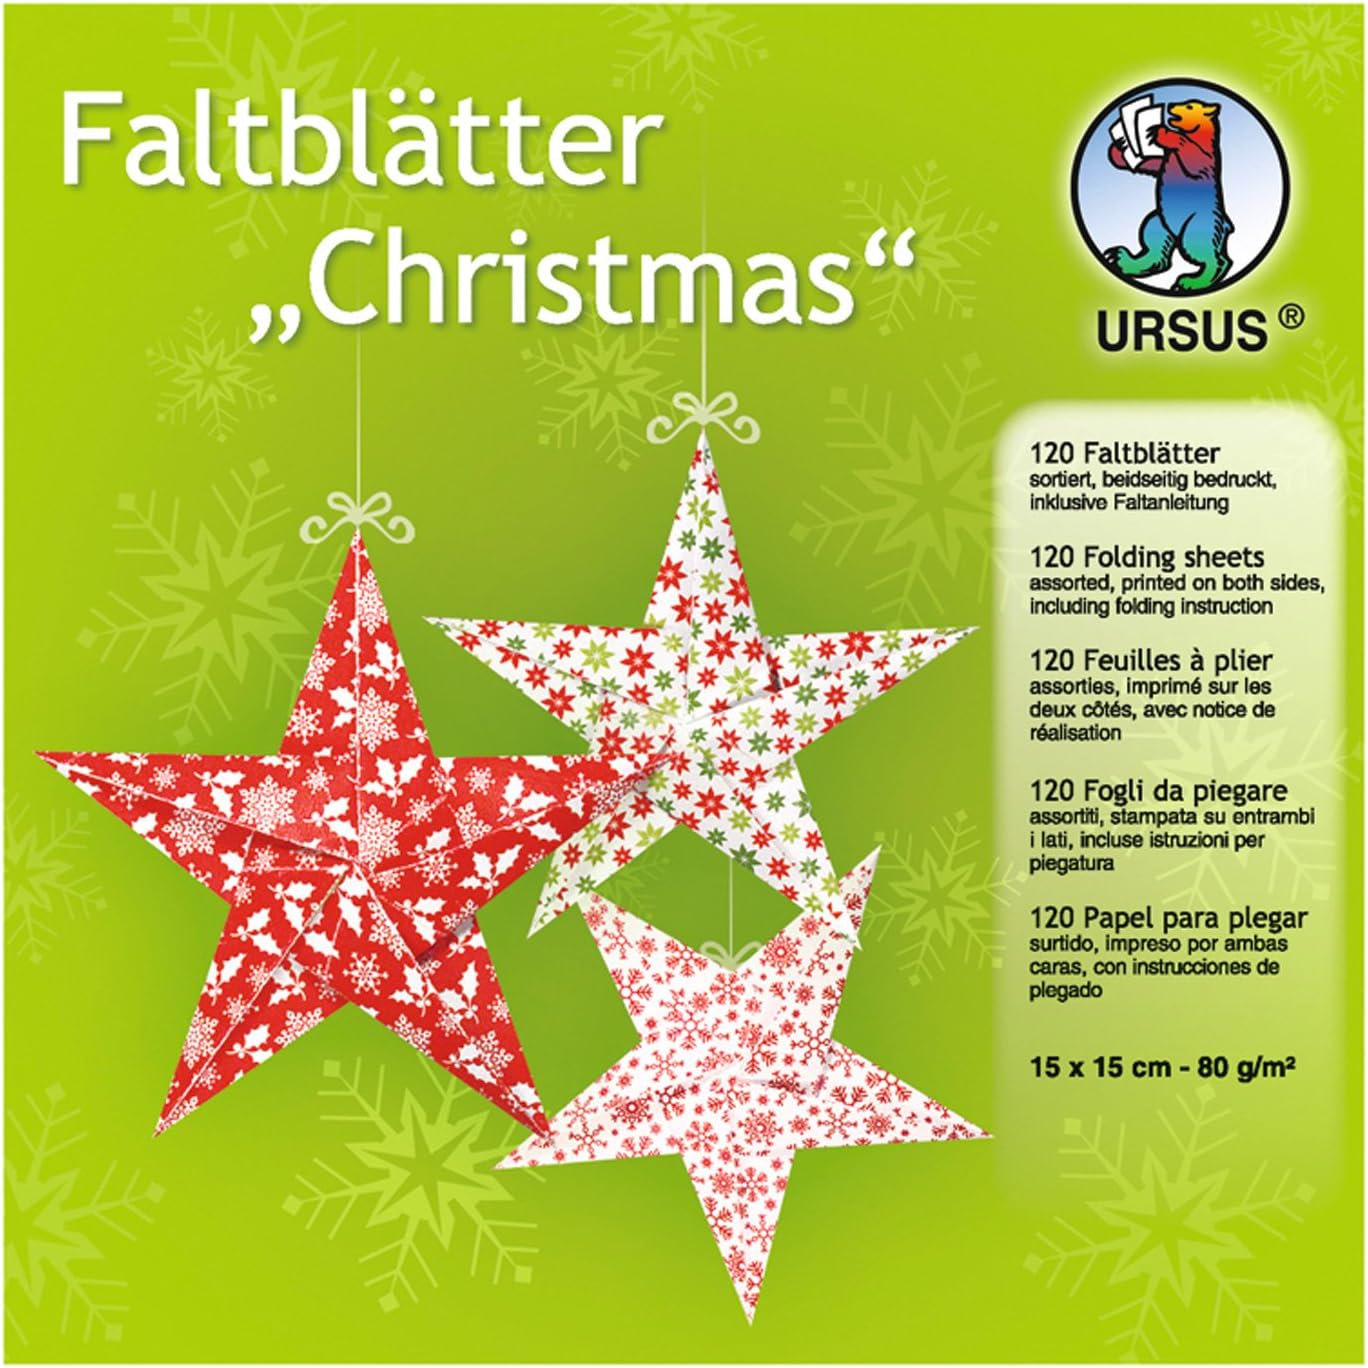 URSUS Faltbltter Christmas 80 g/m 15x15cm